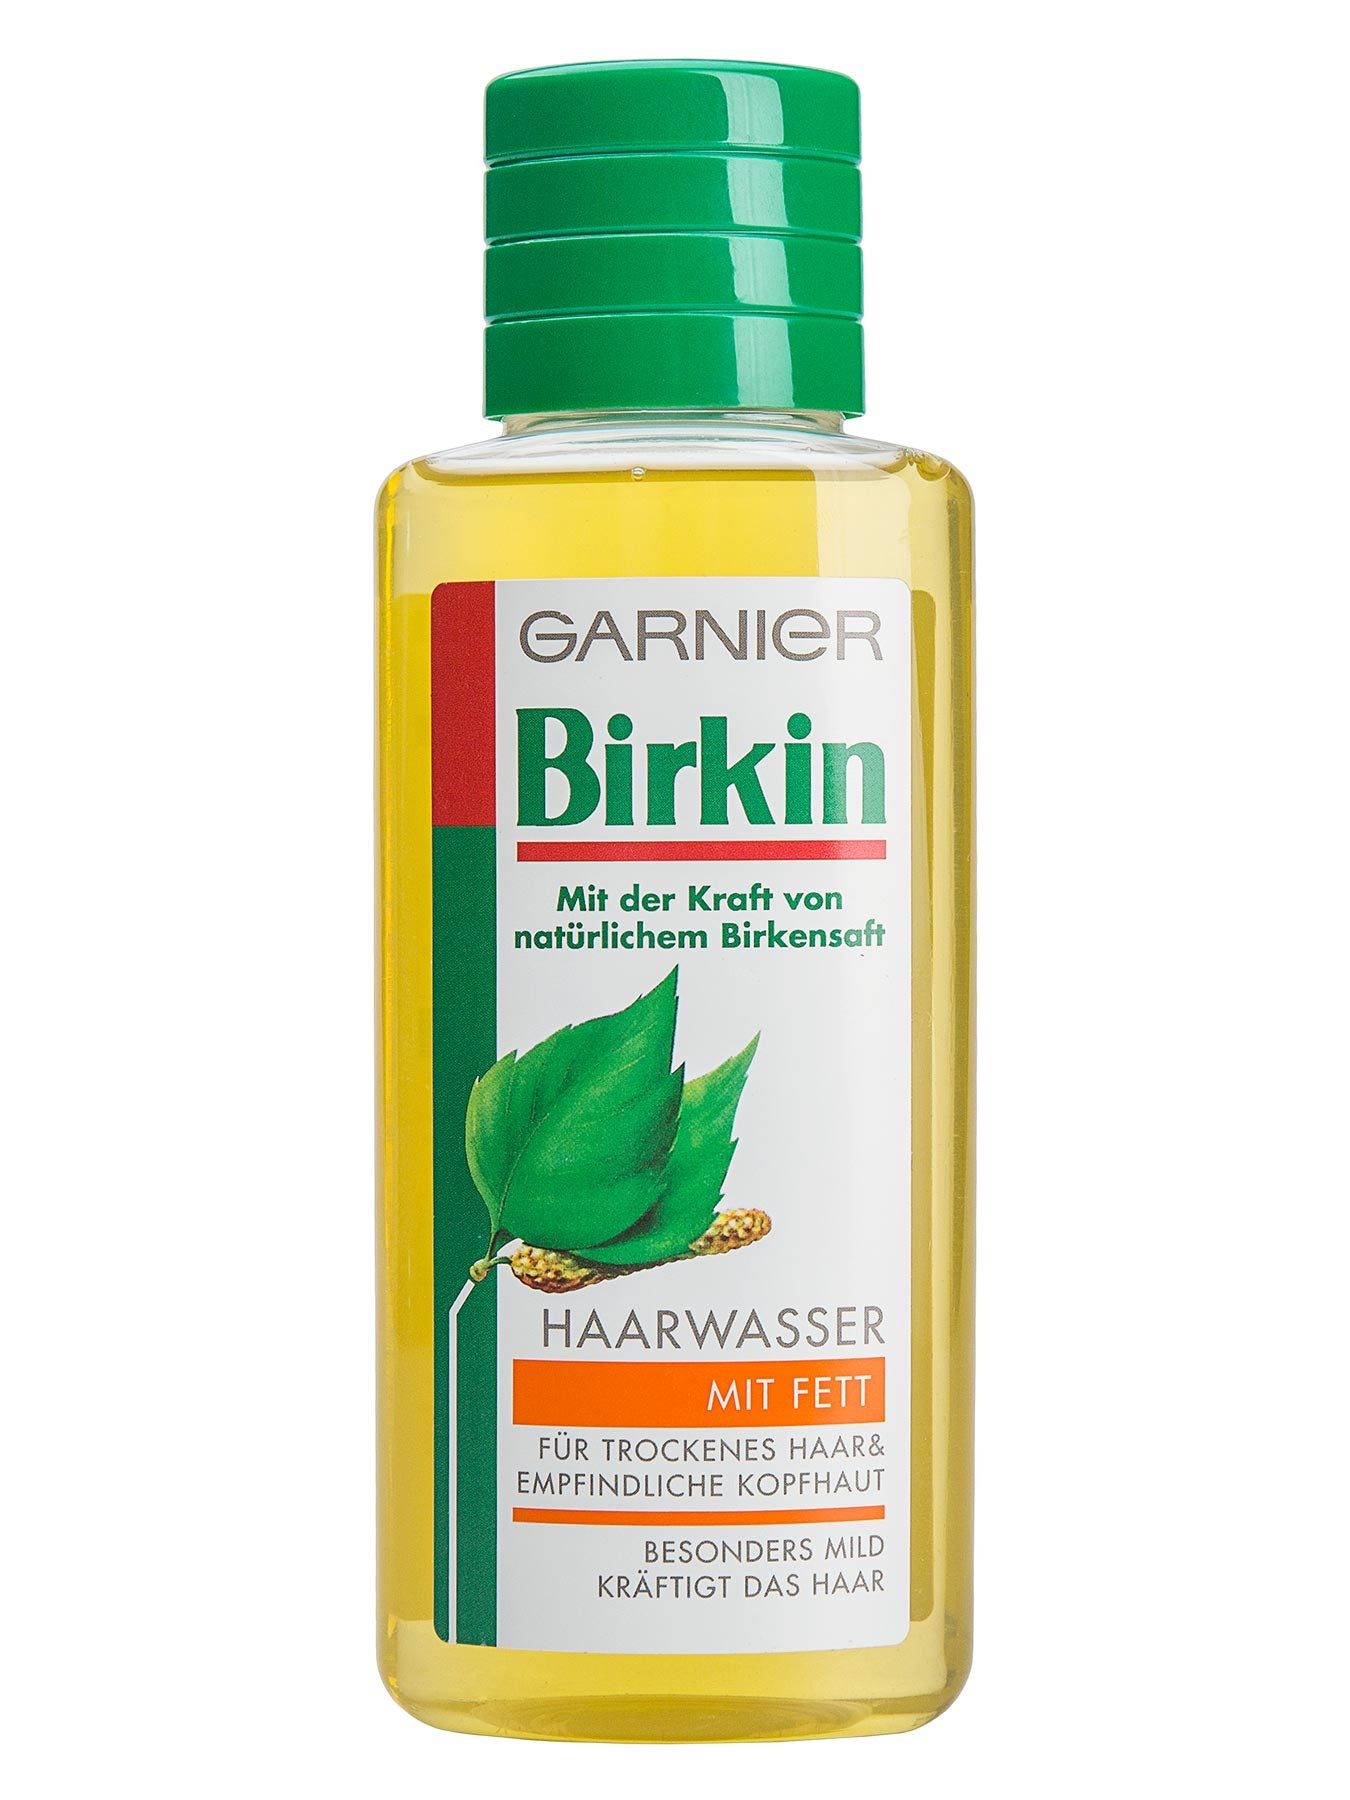 Haarwasser-mit-Fett-Birkin-Mit-Fett-250ml-Vorderseite-Garnier-Deutschland-gr